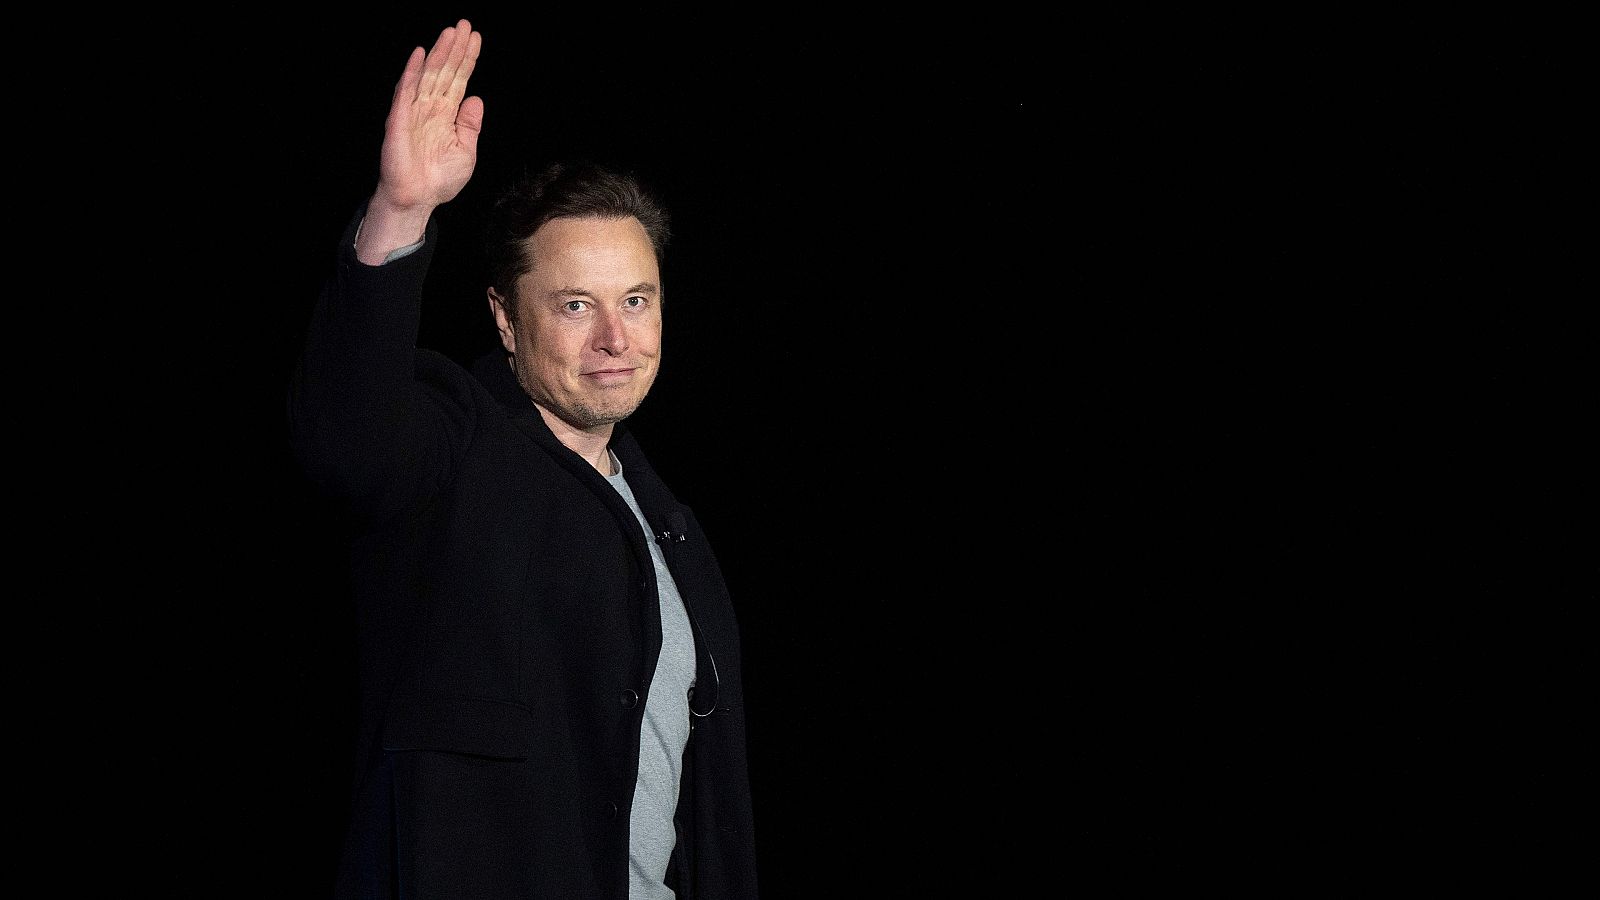 El magnate tecnológico Elon Musk, dueño de Tesla o SpaceX, entre otras empresas.